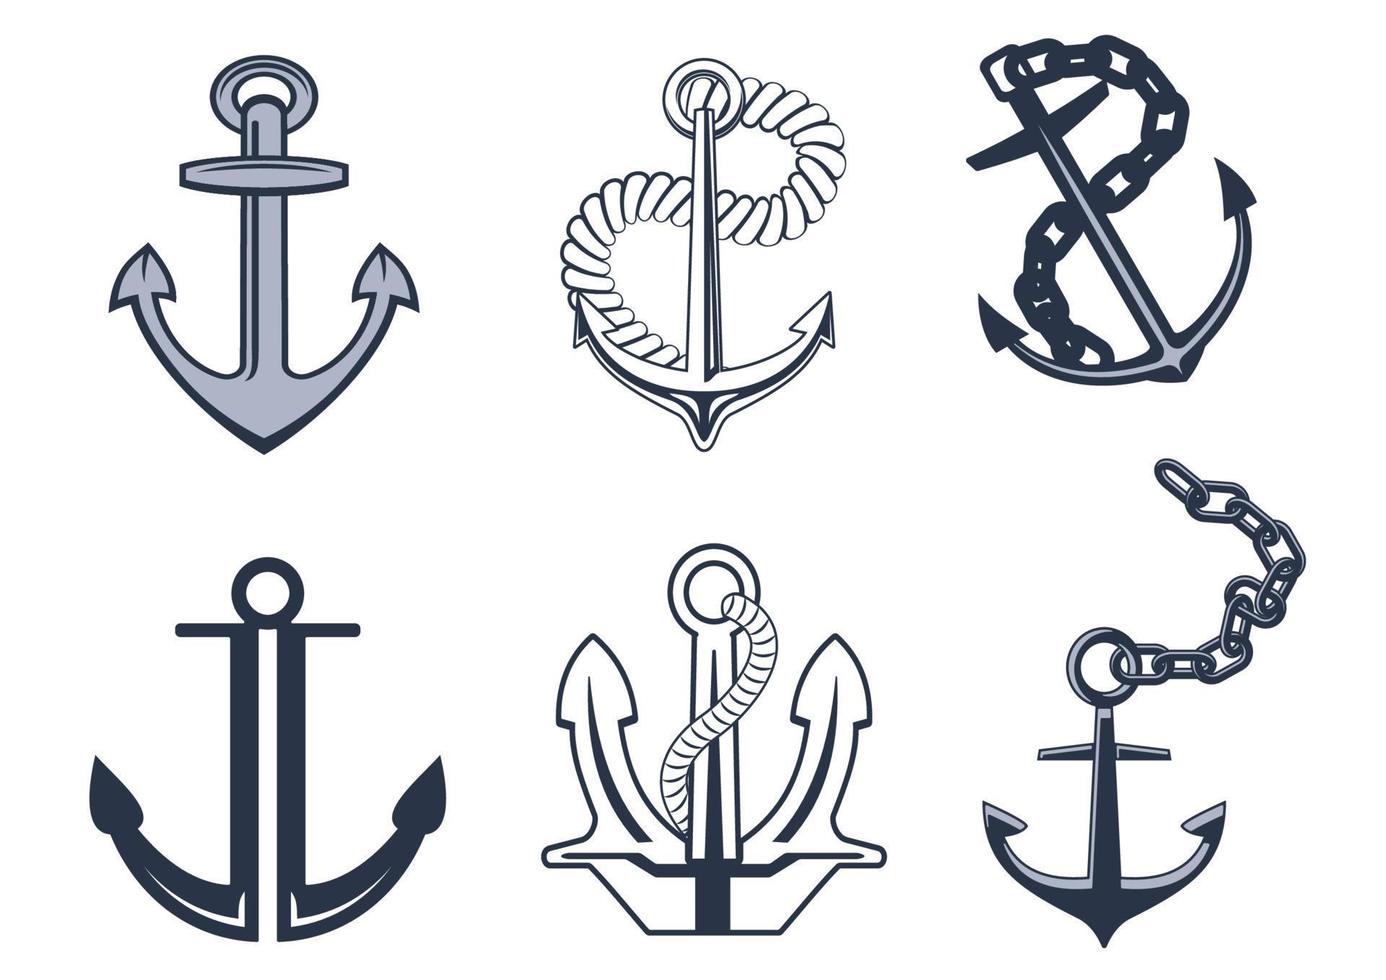 Set of anchor symbols vector